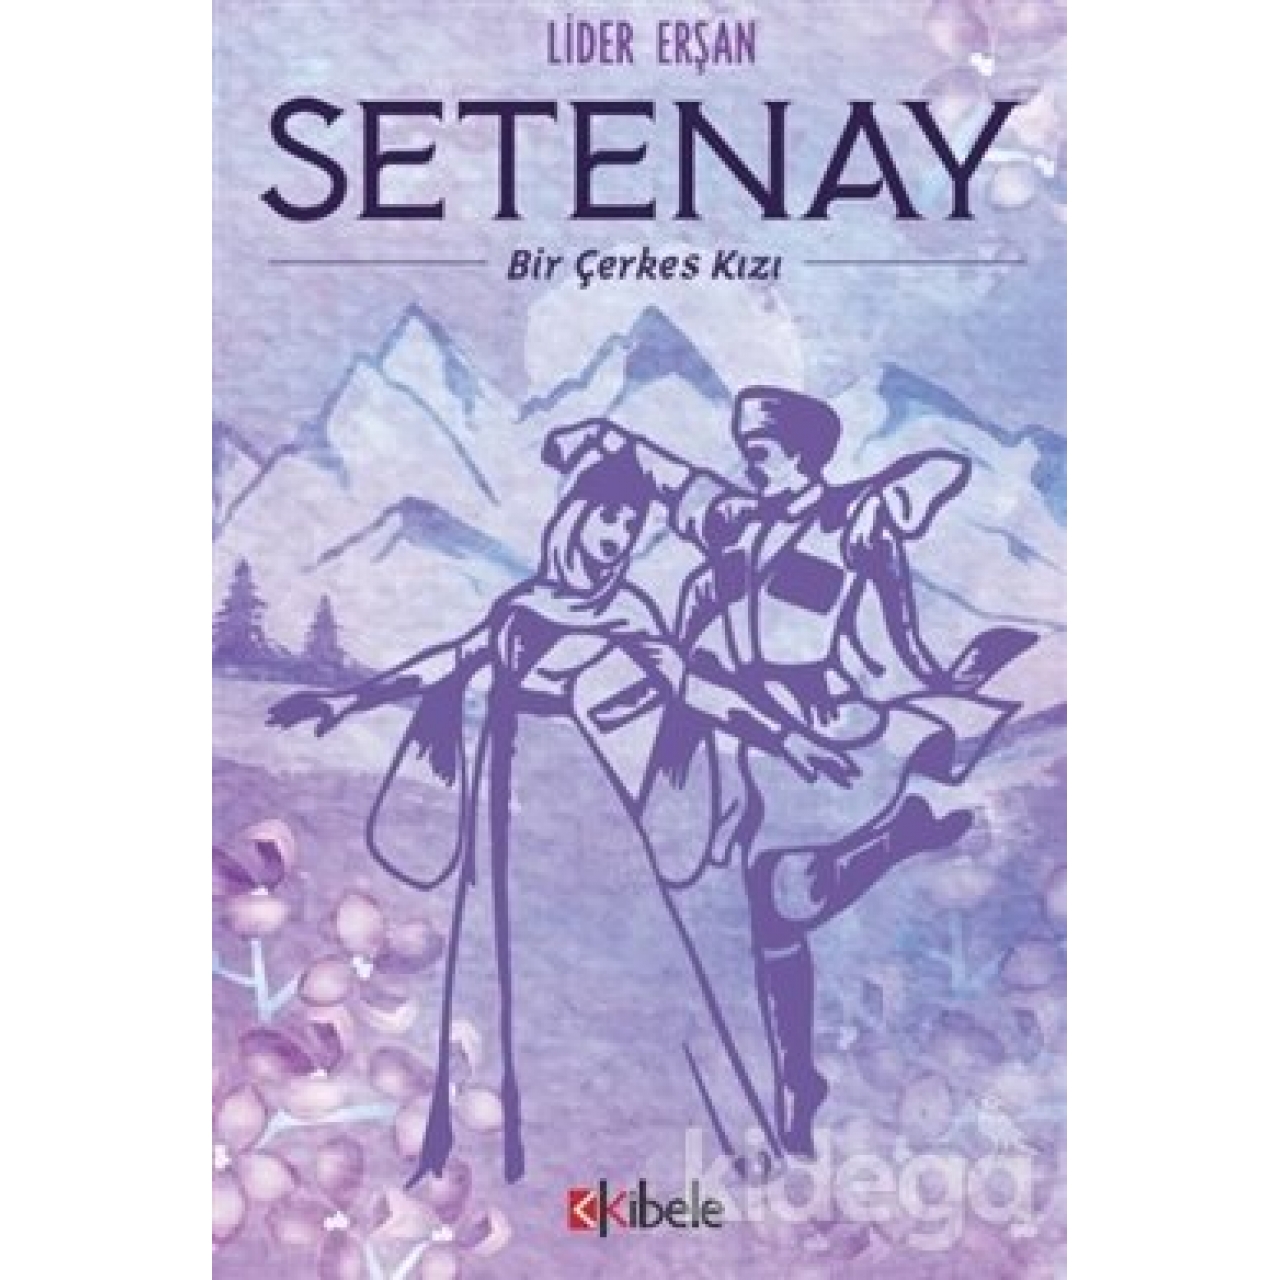 Setenay - Bir Çerkes Kızı